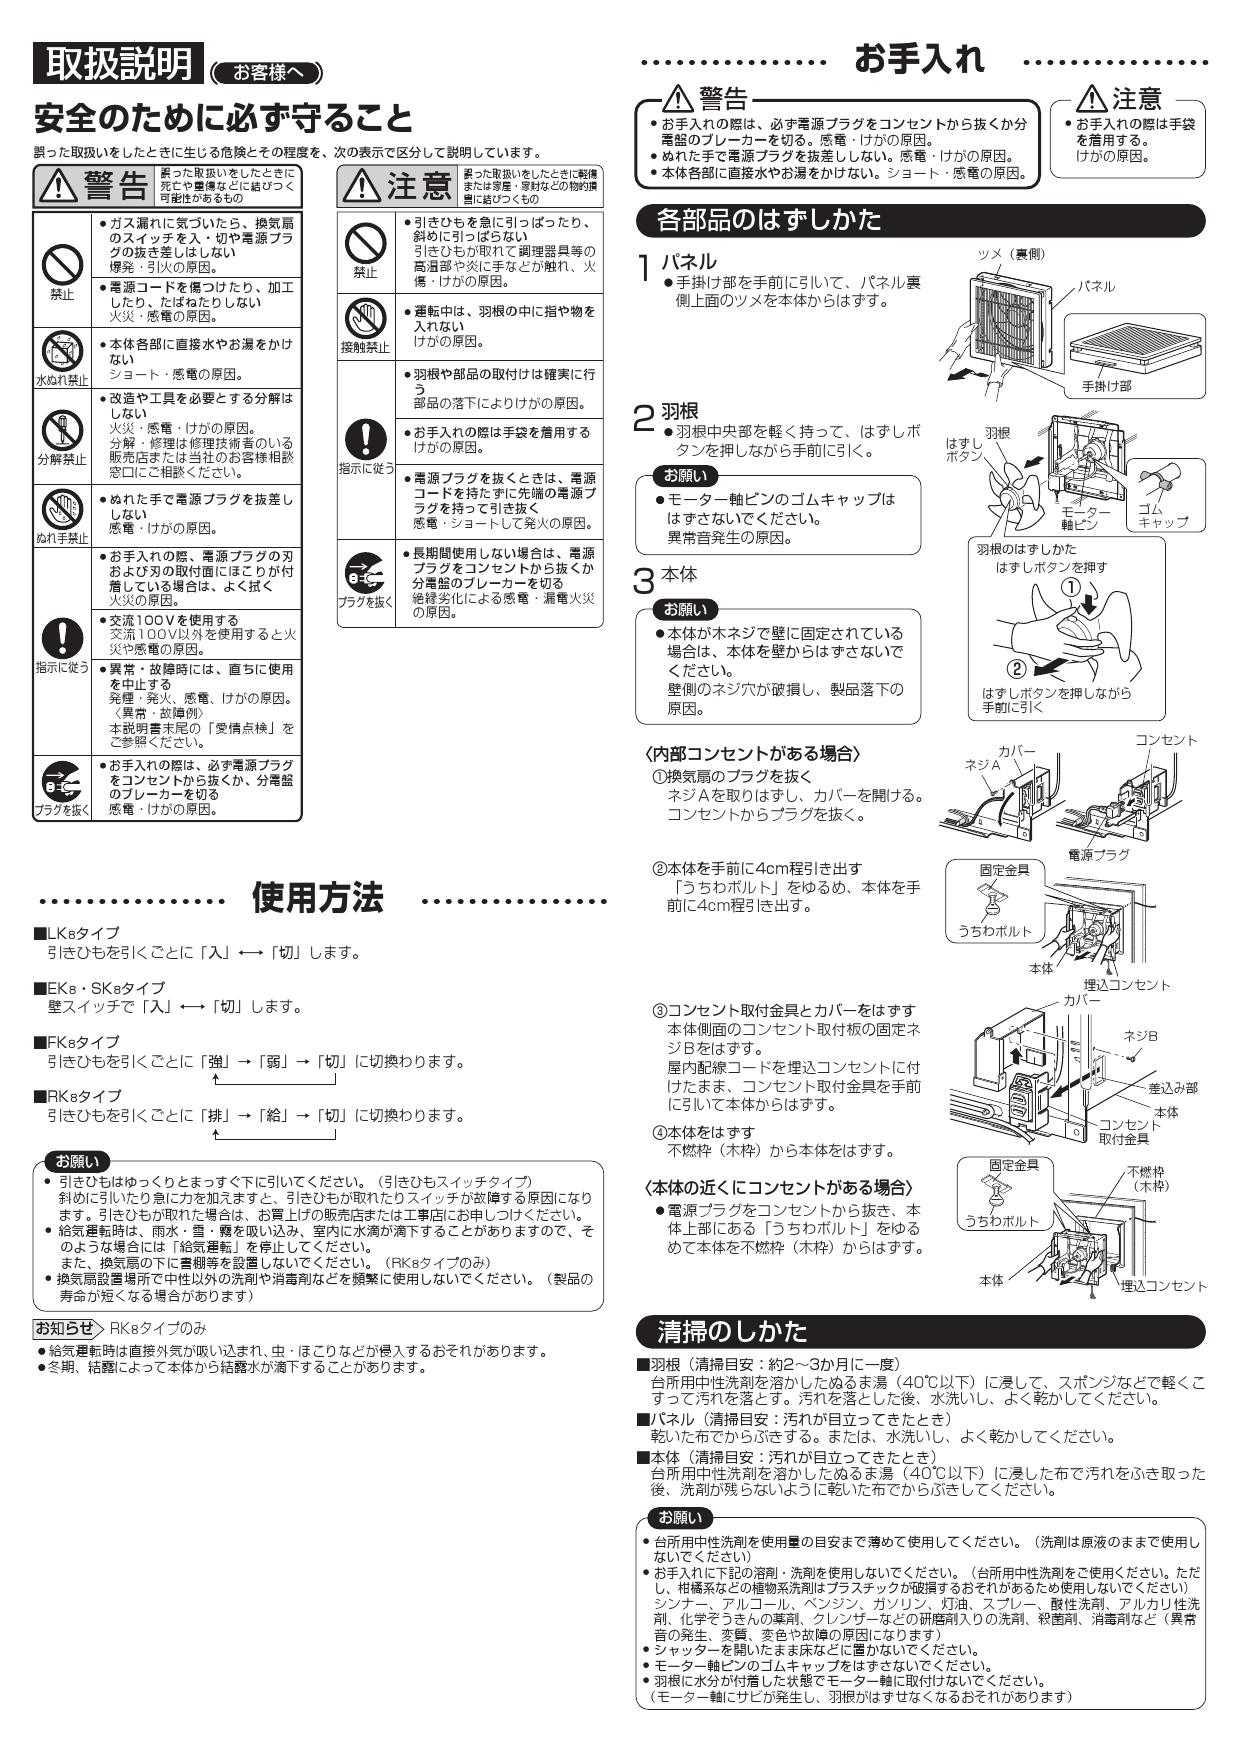 三菱電機 EX-25EK8-C取扱説明書 納入仕様図 | 通販 プロストア ダイレクト